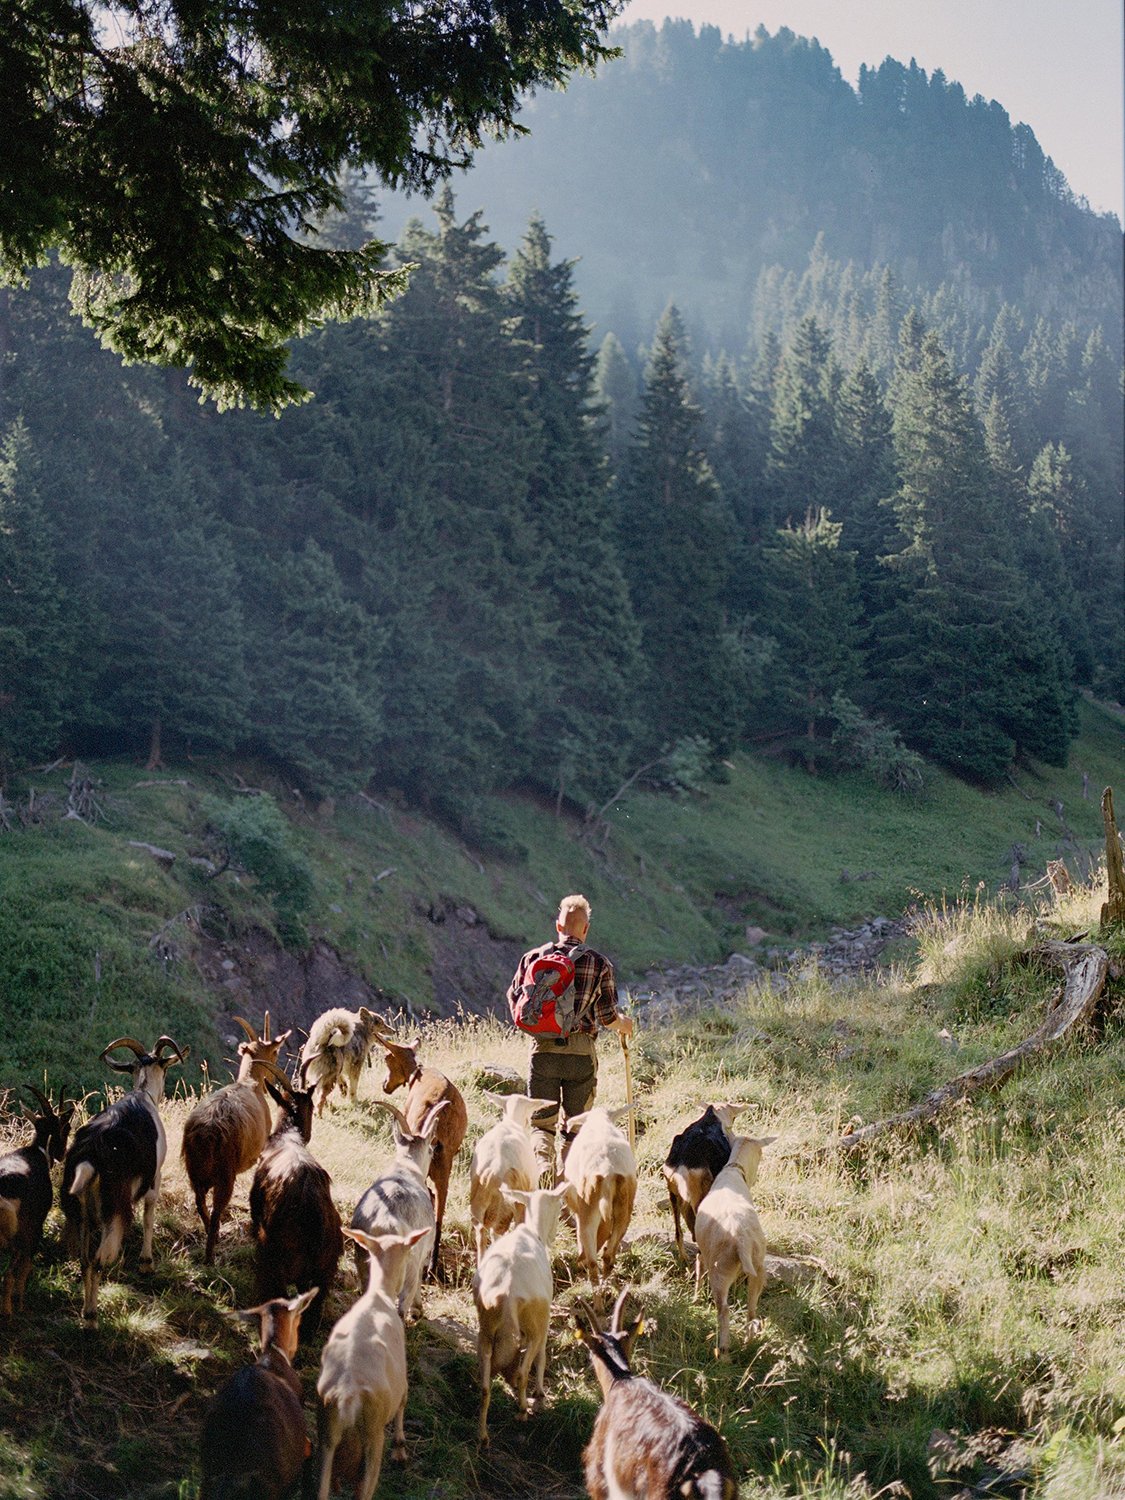   Il pascolo di Nichi Nones si trova in una delle zone più turistiche del Trentino. Per questo si rifiuta di usare i cani da protezione: il rischio che attacchino esseri umani è troppo elevato, Val di Fiemme, agosto 2023 